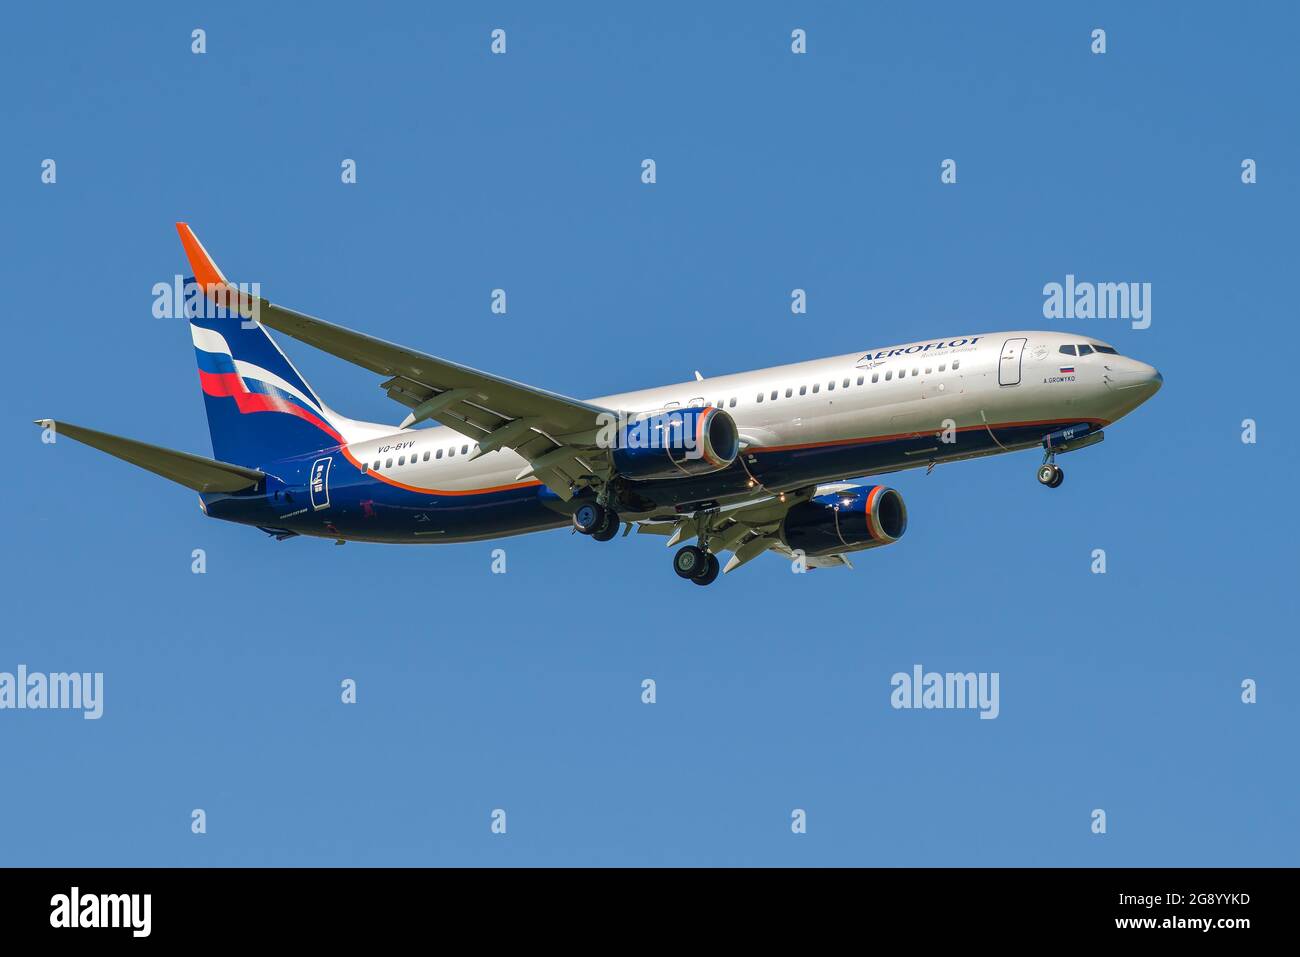 SANKT PETERSBURG, RUSSLAND - 29. MAI 2021: BOEING 737-8LJ 'A. Gromyko' (VQ-BVV) von Aeroflot Airlines auf dem Gleitpfad gegen den blauen Himmel Stockfoto